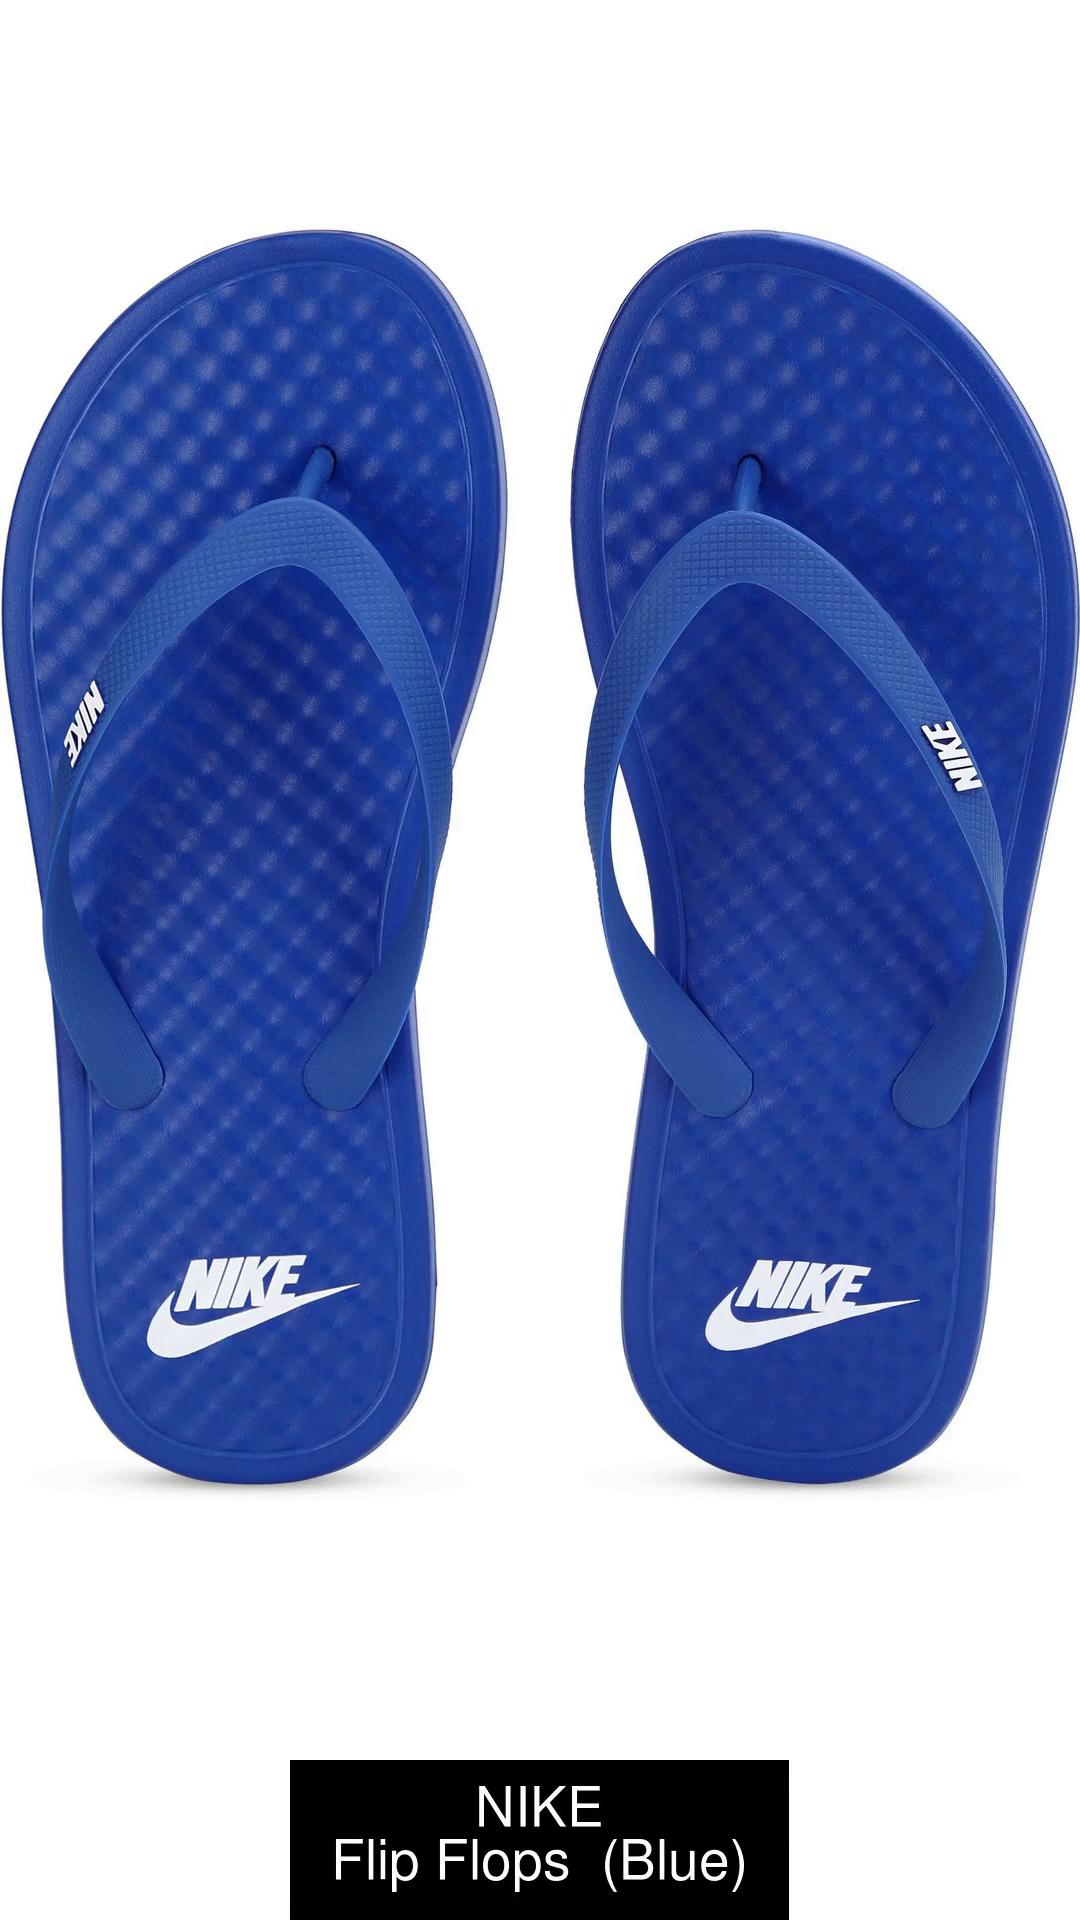 NIKE Flip Flops - Buy NIKE at Best Price - Shop Online for Footwears in India | Flipkart.com